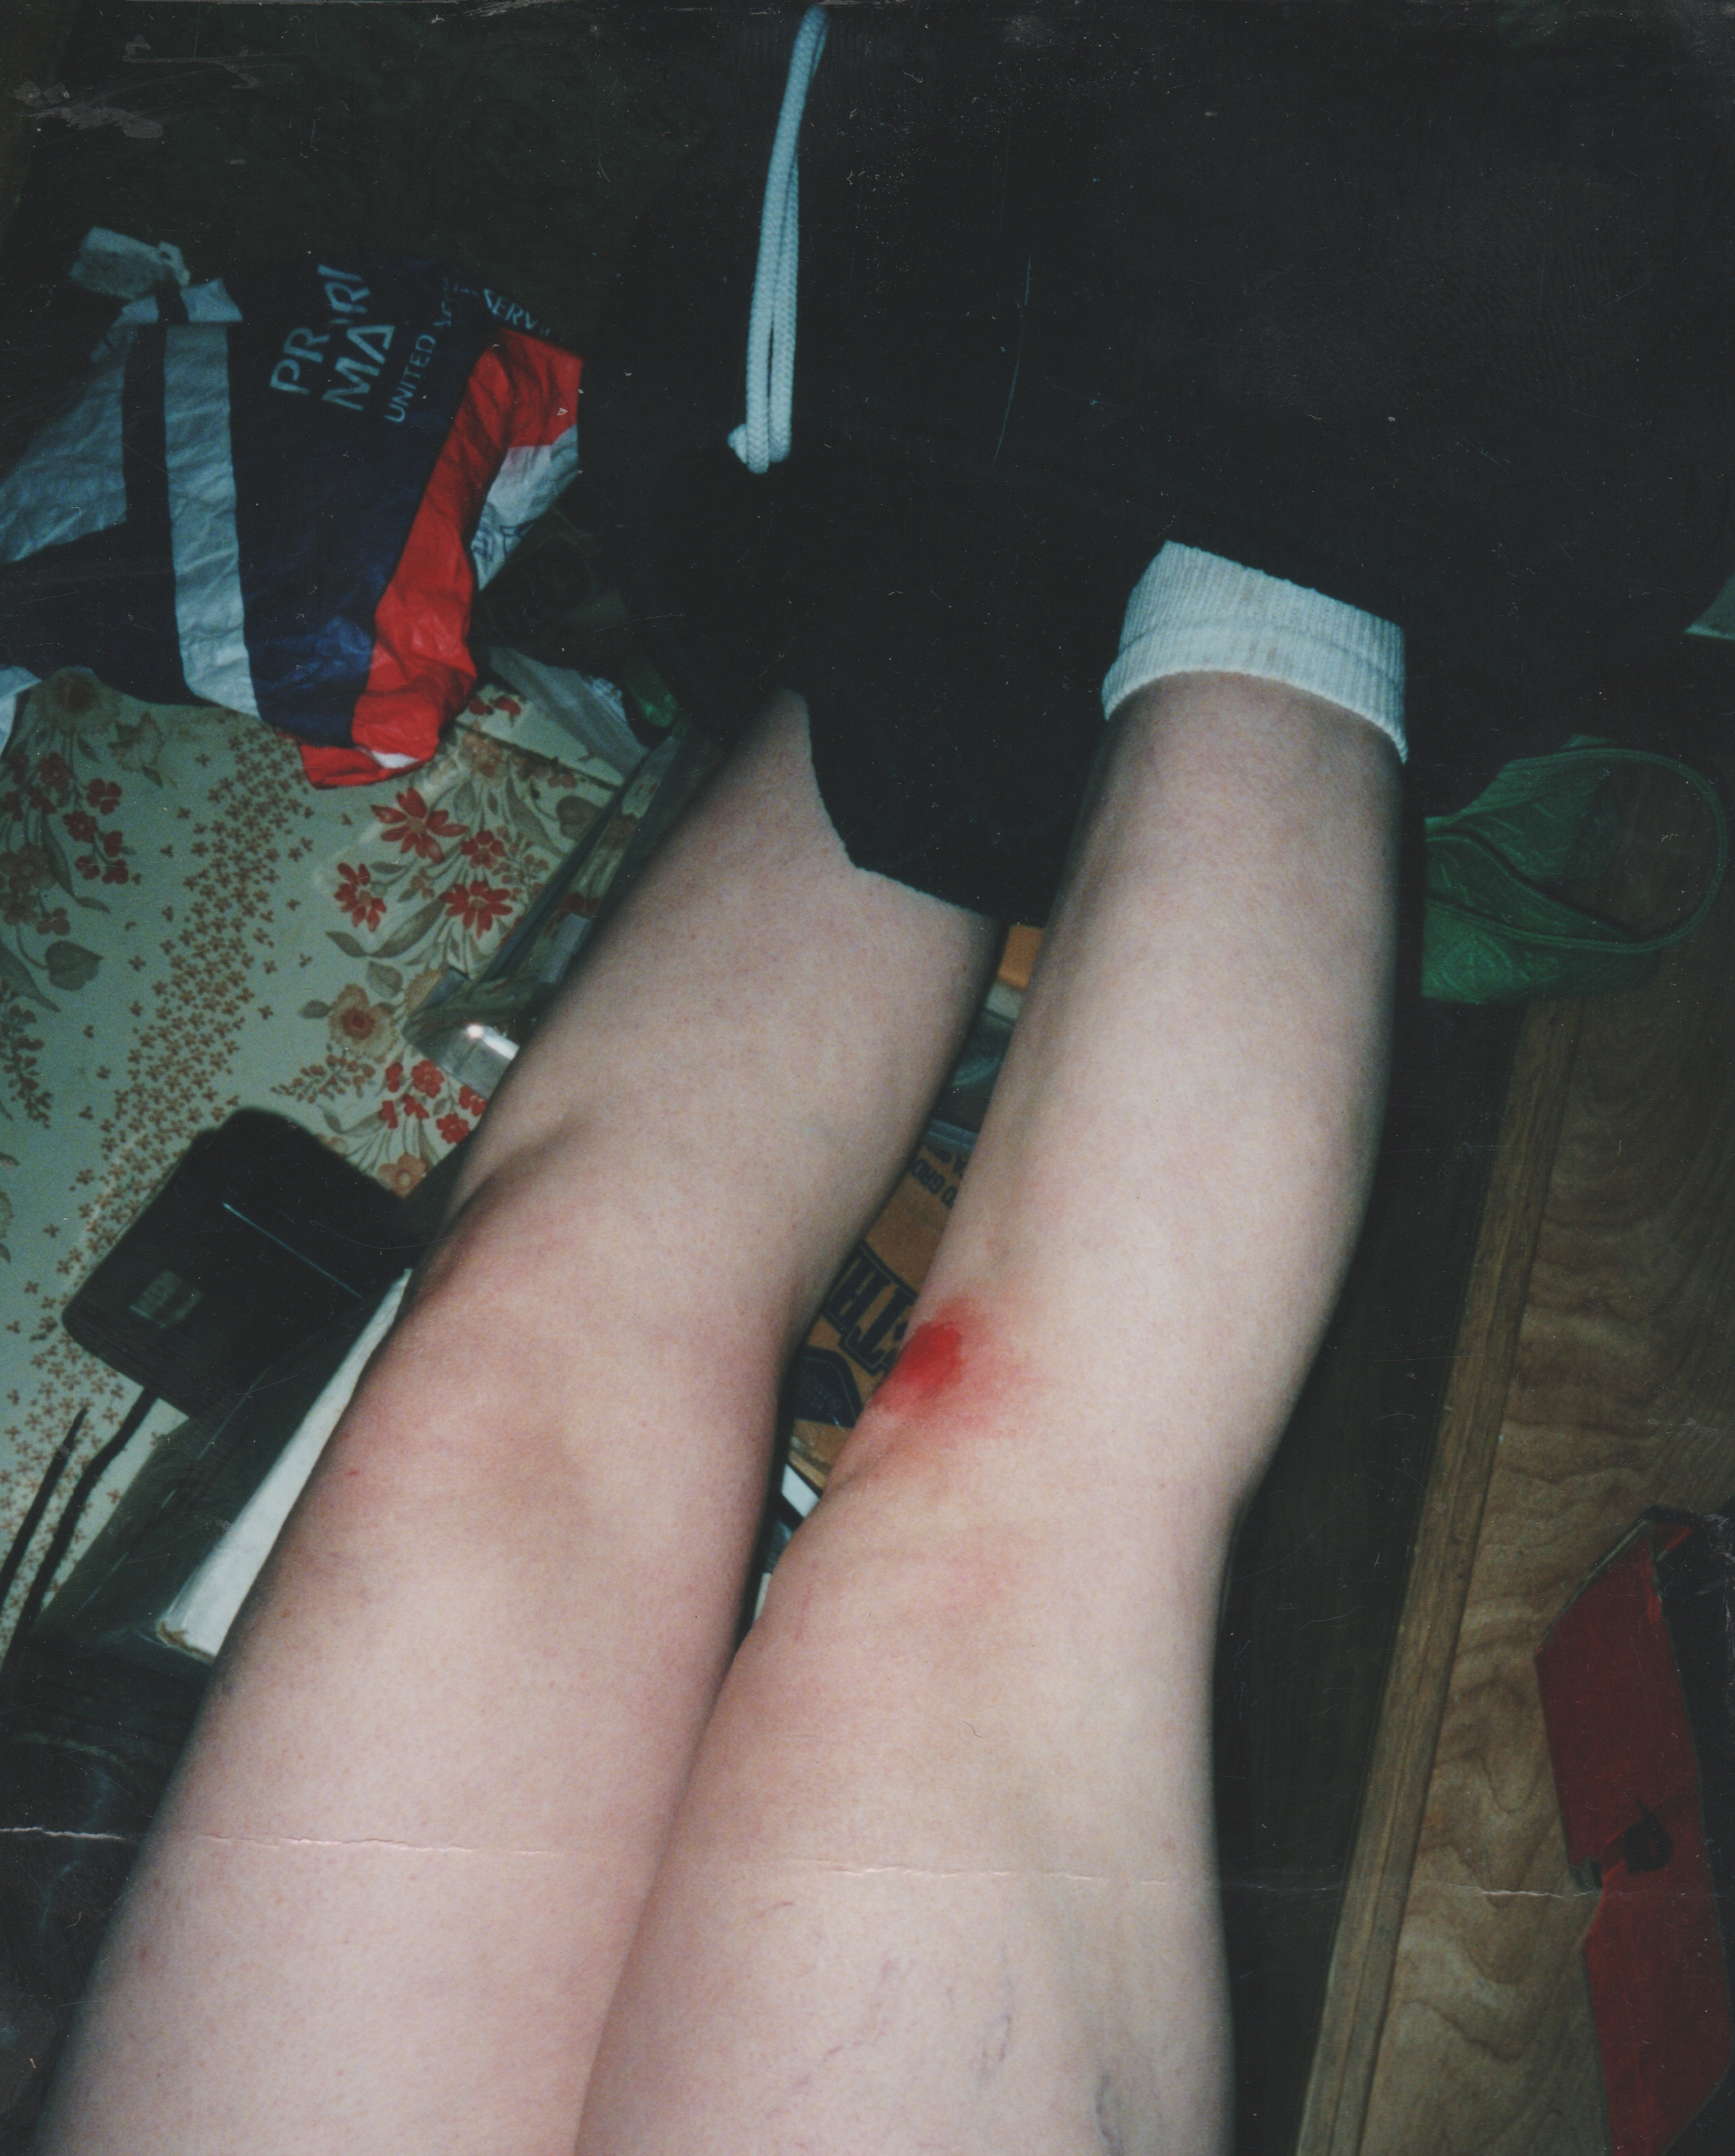 2001-12-06 - Legs Injured - Wound - Maybe Katie.jpg